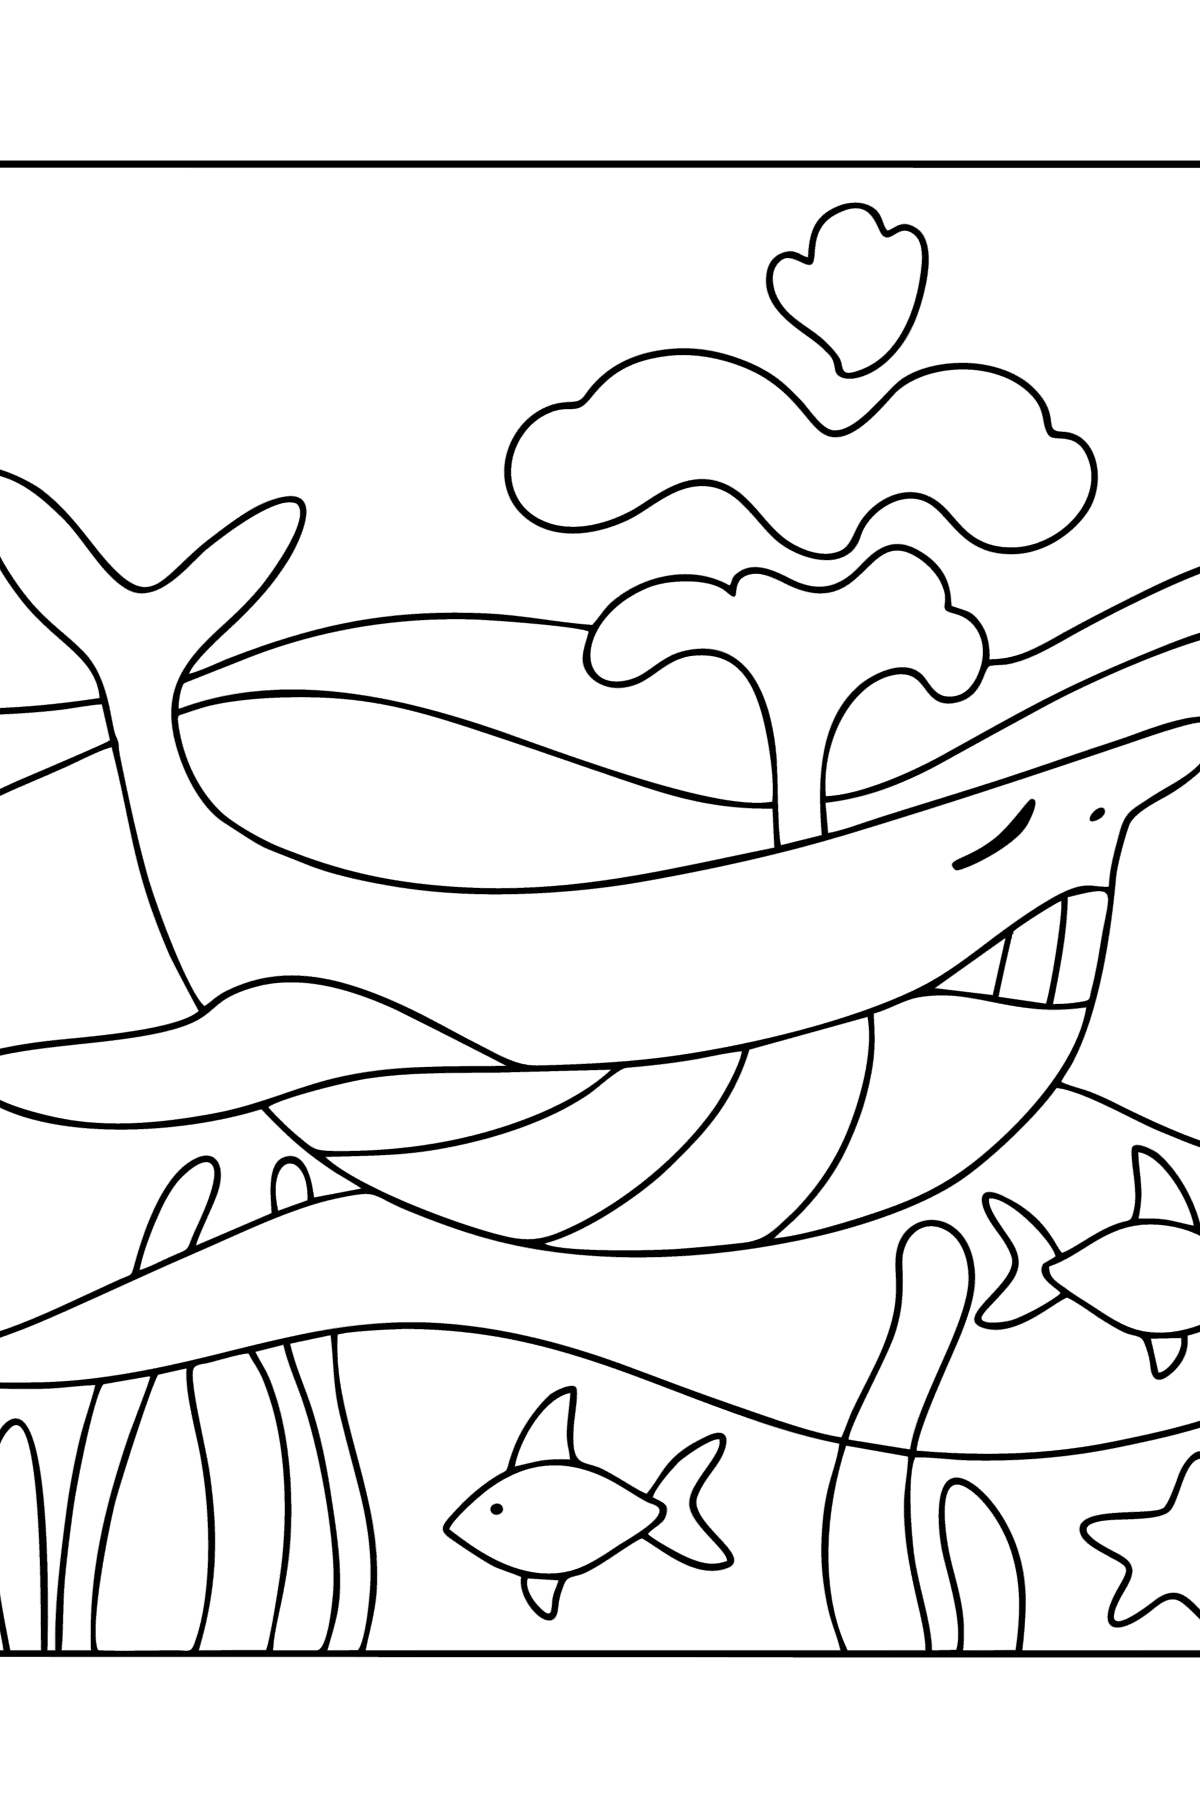 Tegning til farvning sød kaskelothval - Tegninger til farvelægning for børn